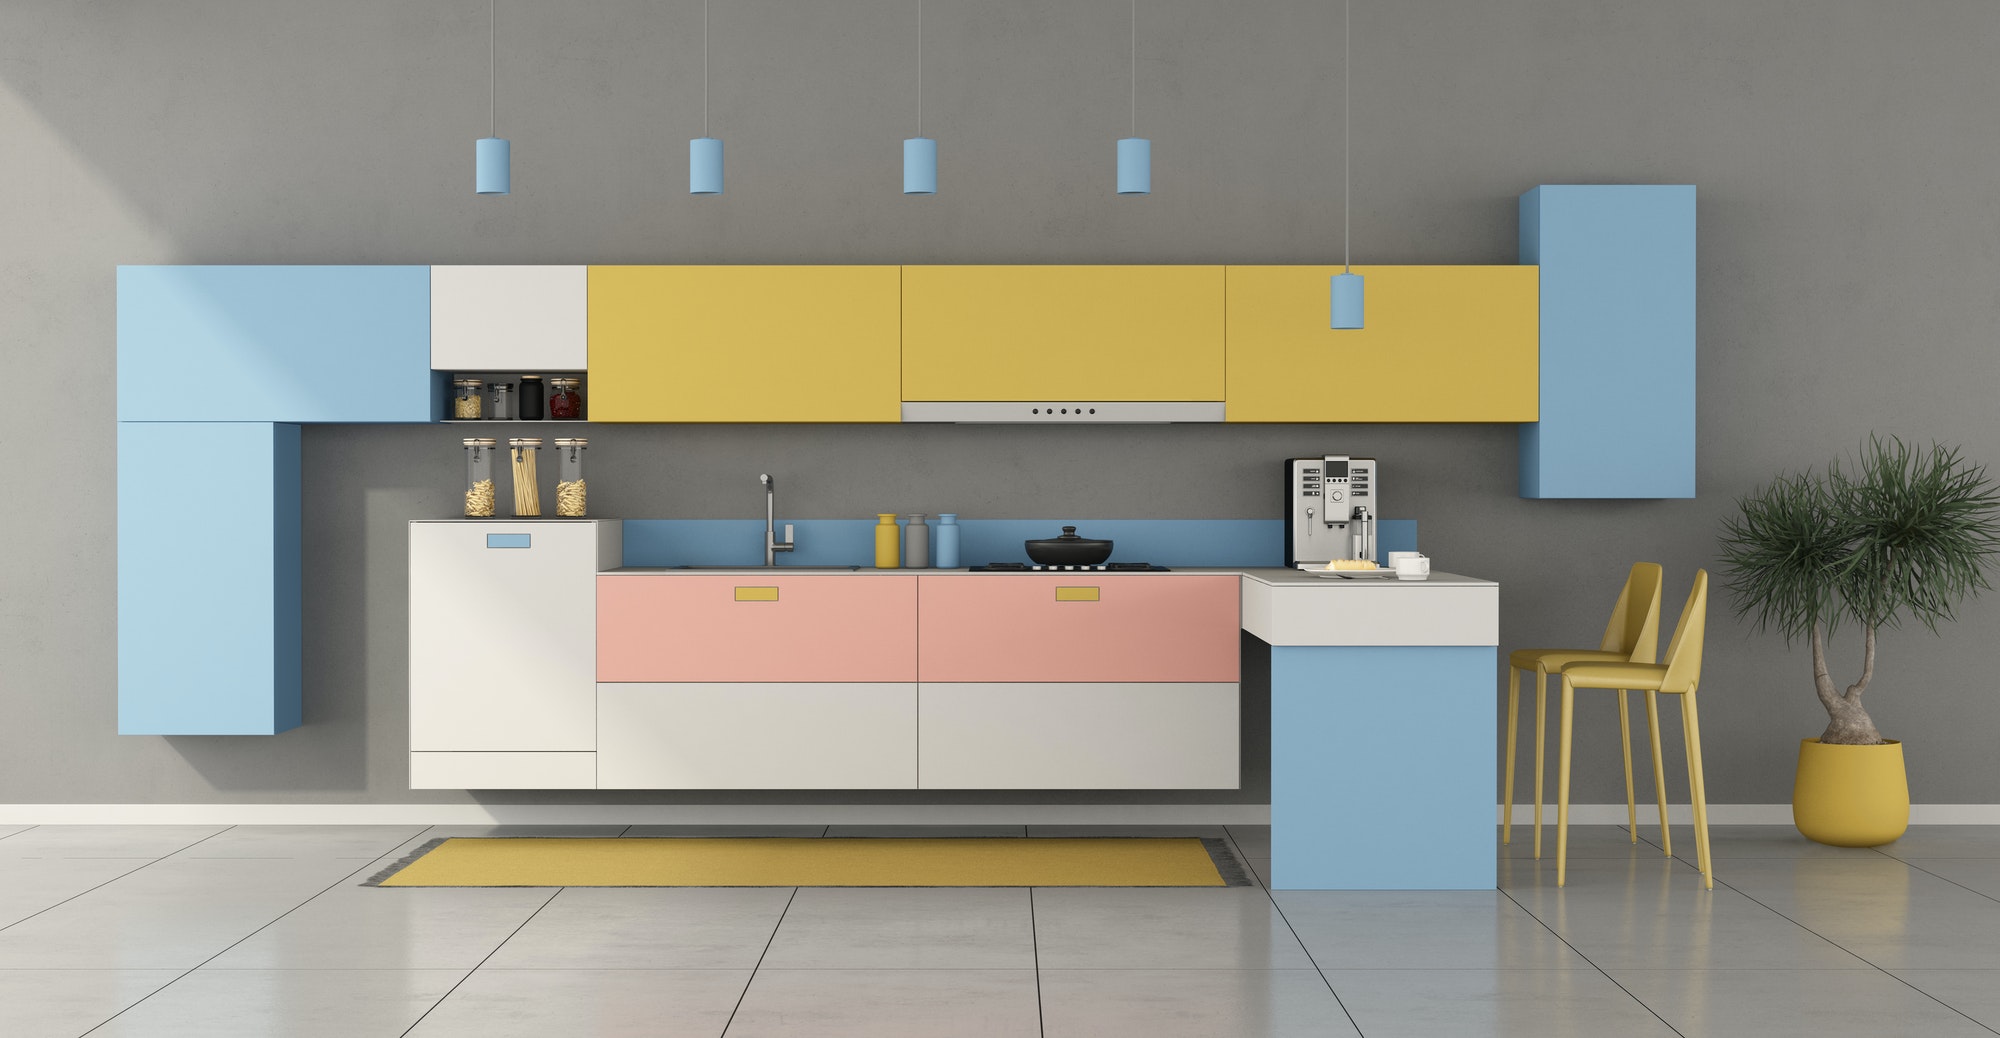 Colorful minimalist kitchen with peninsula